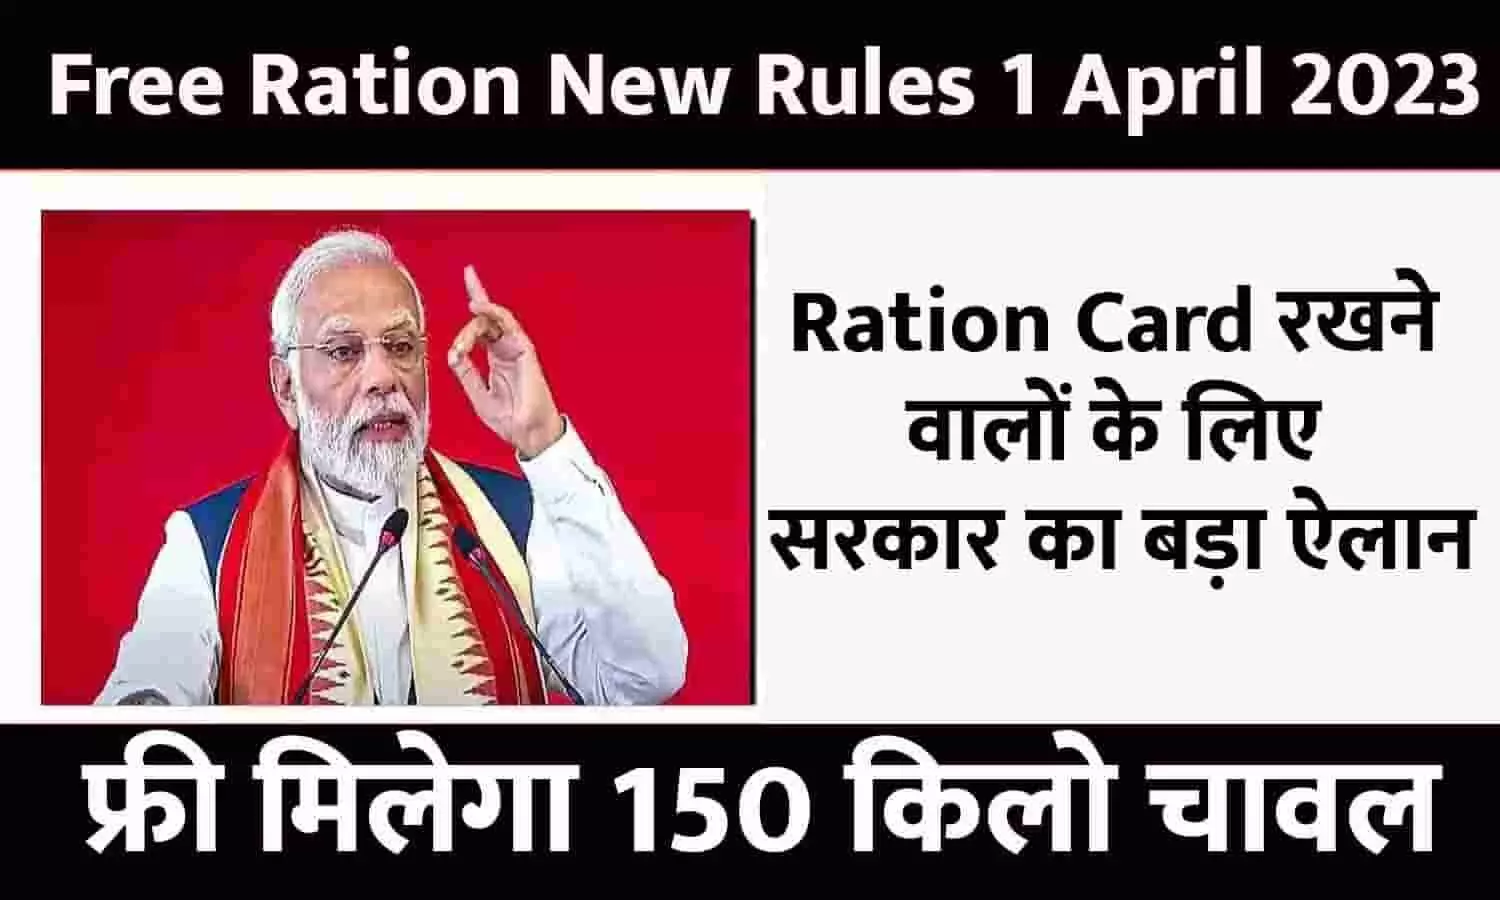 Free Ration New Rules 1 April 2023: Ration Card रखने वालों के लिए सरकार का बड़ा ऐलान! फ्री मिलेगा 150 किलो चावल, बिन देर किये ध्यान दे